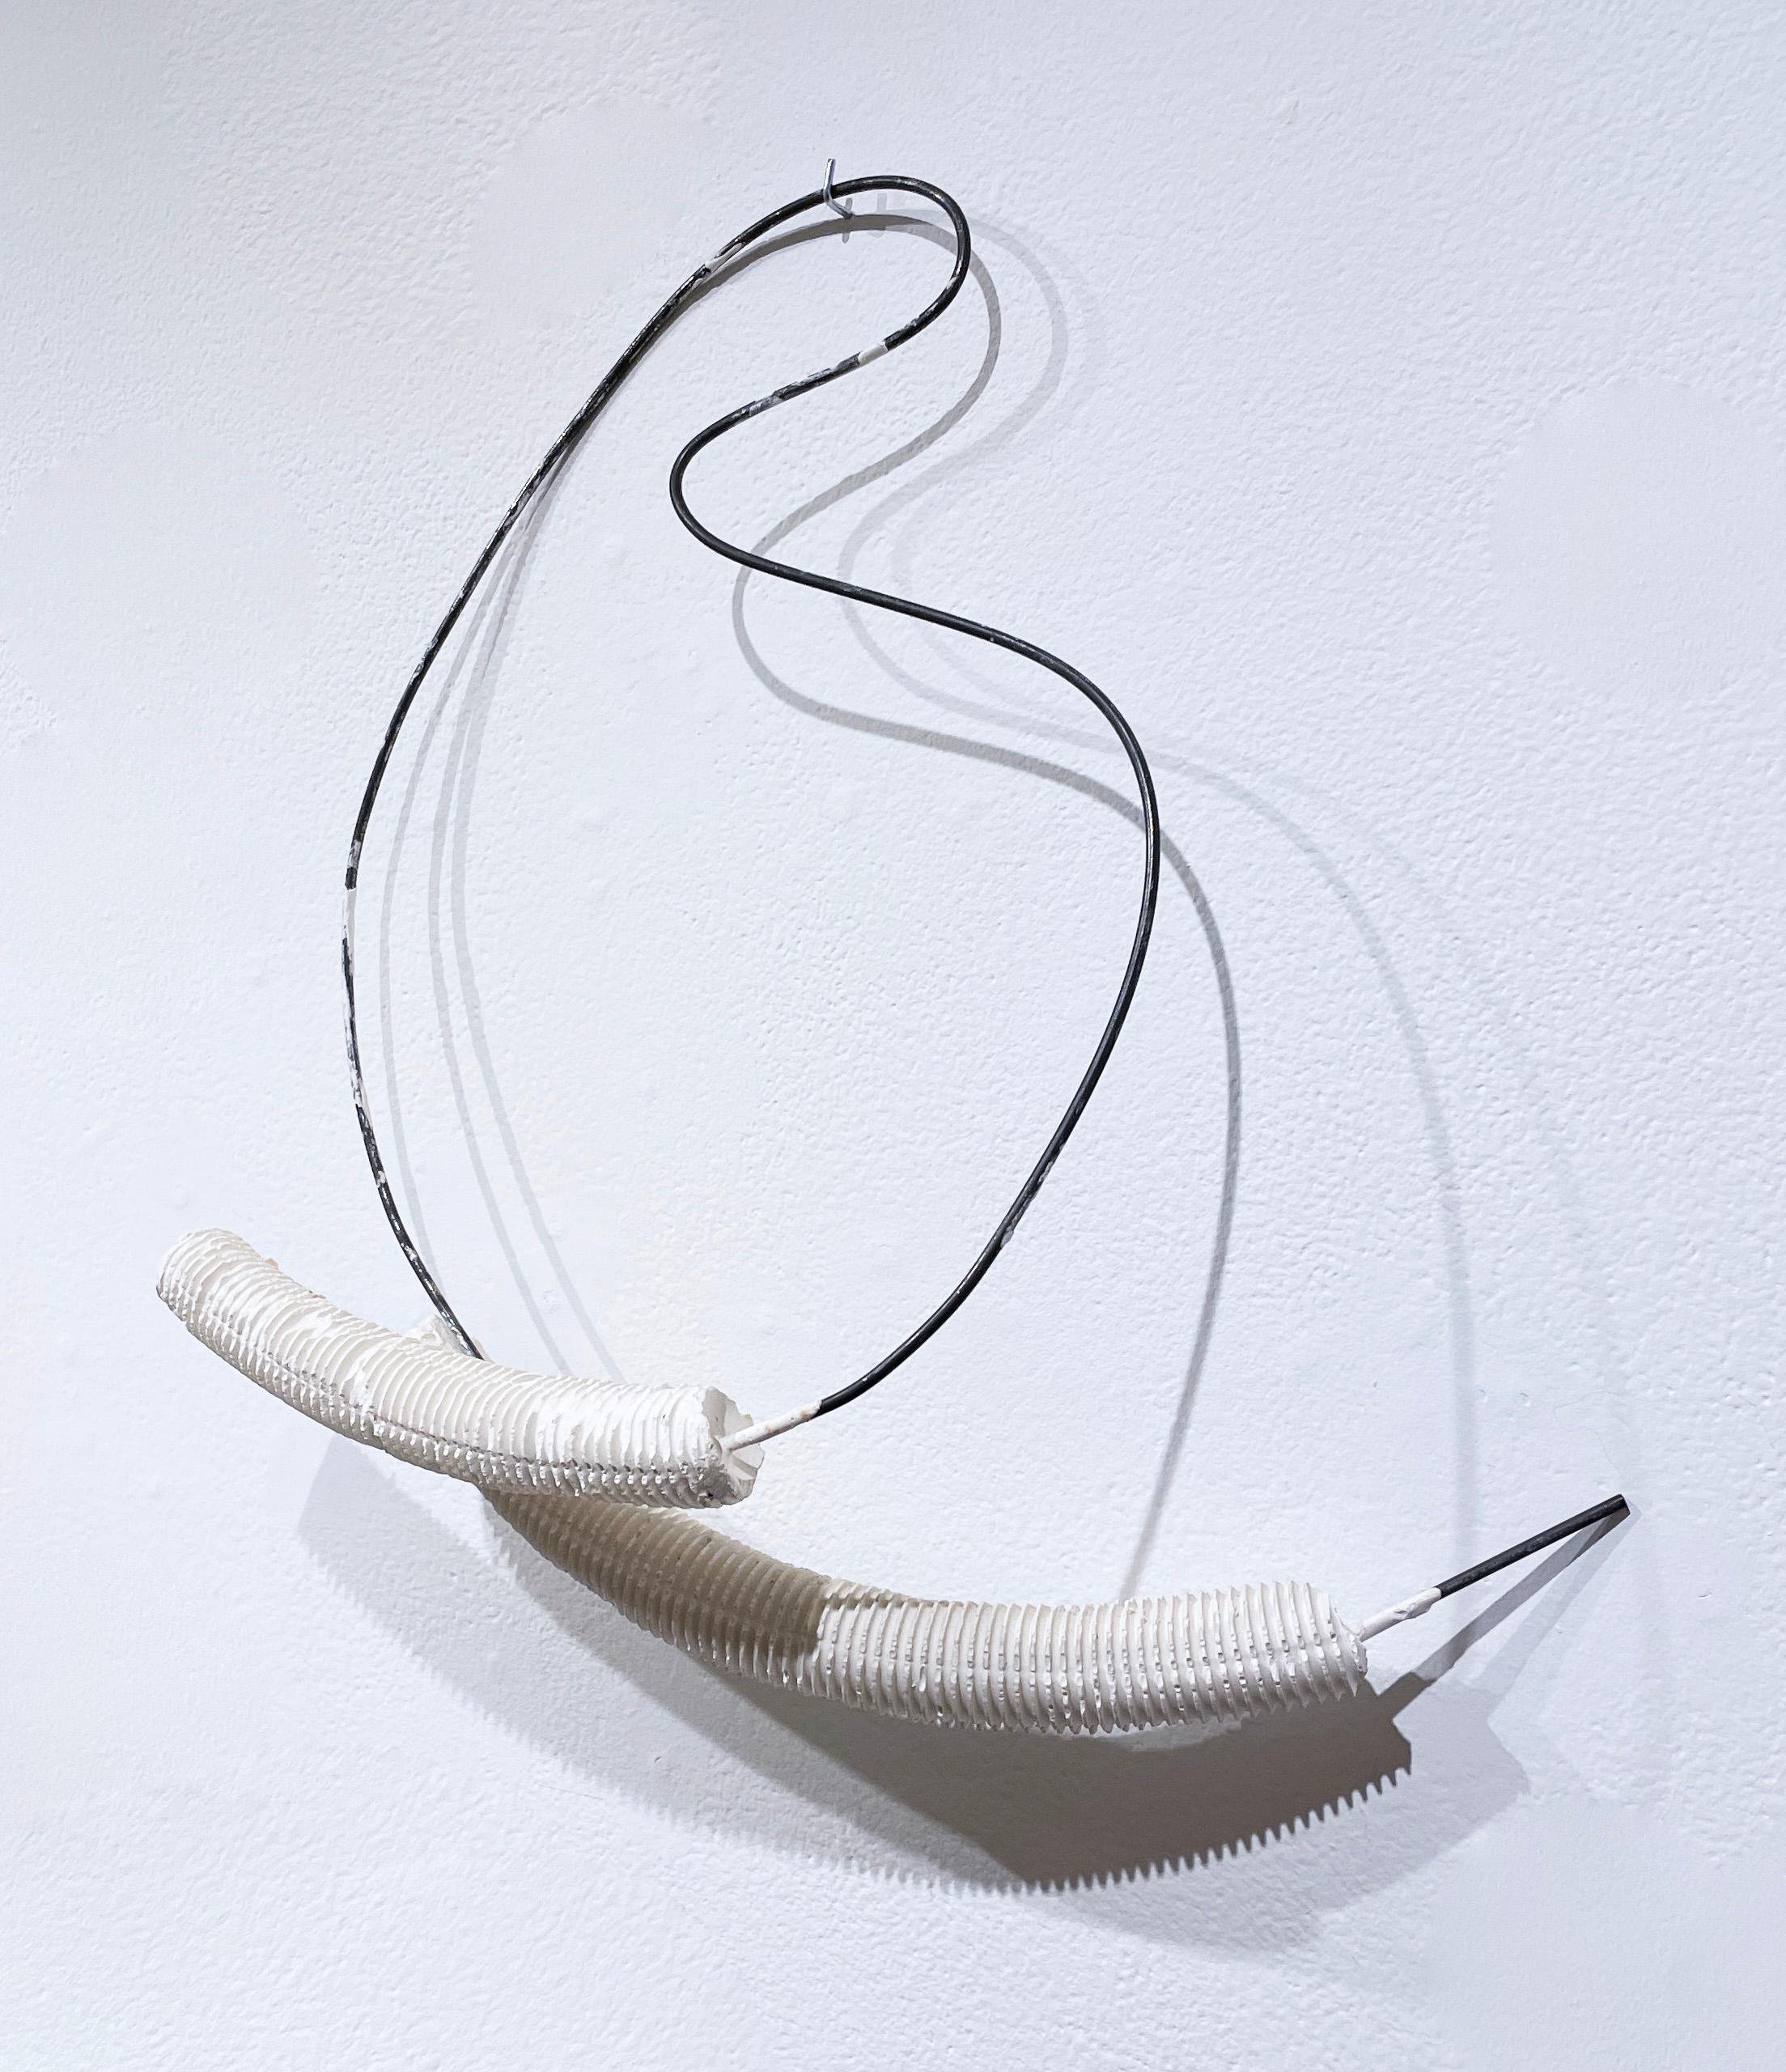 Forme en fil métallique avec pieds croisés (2021), sculpture abstraite hydrocale blanche, métal - Sculpture de Dena Paige Fischer